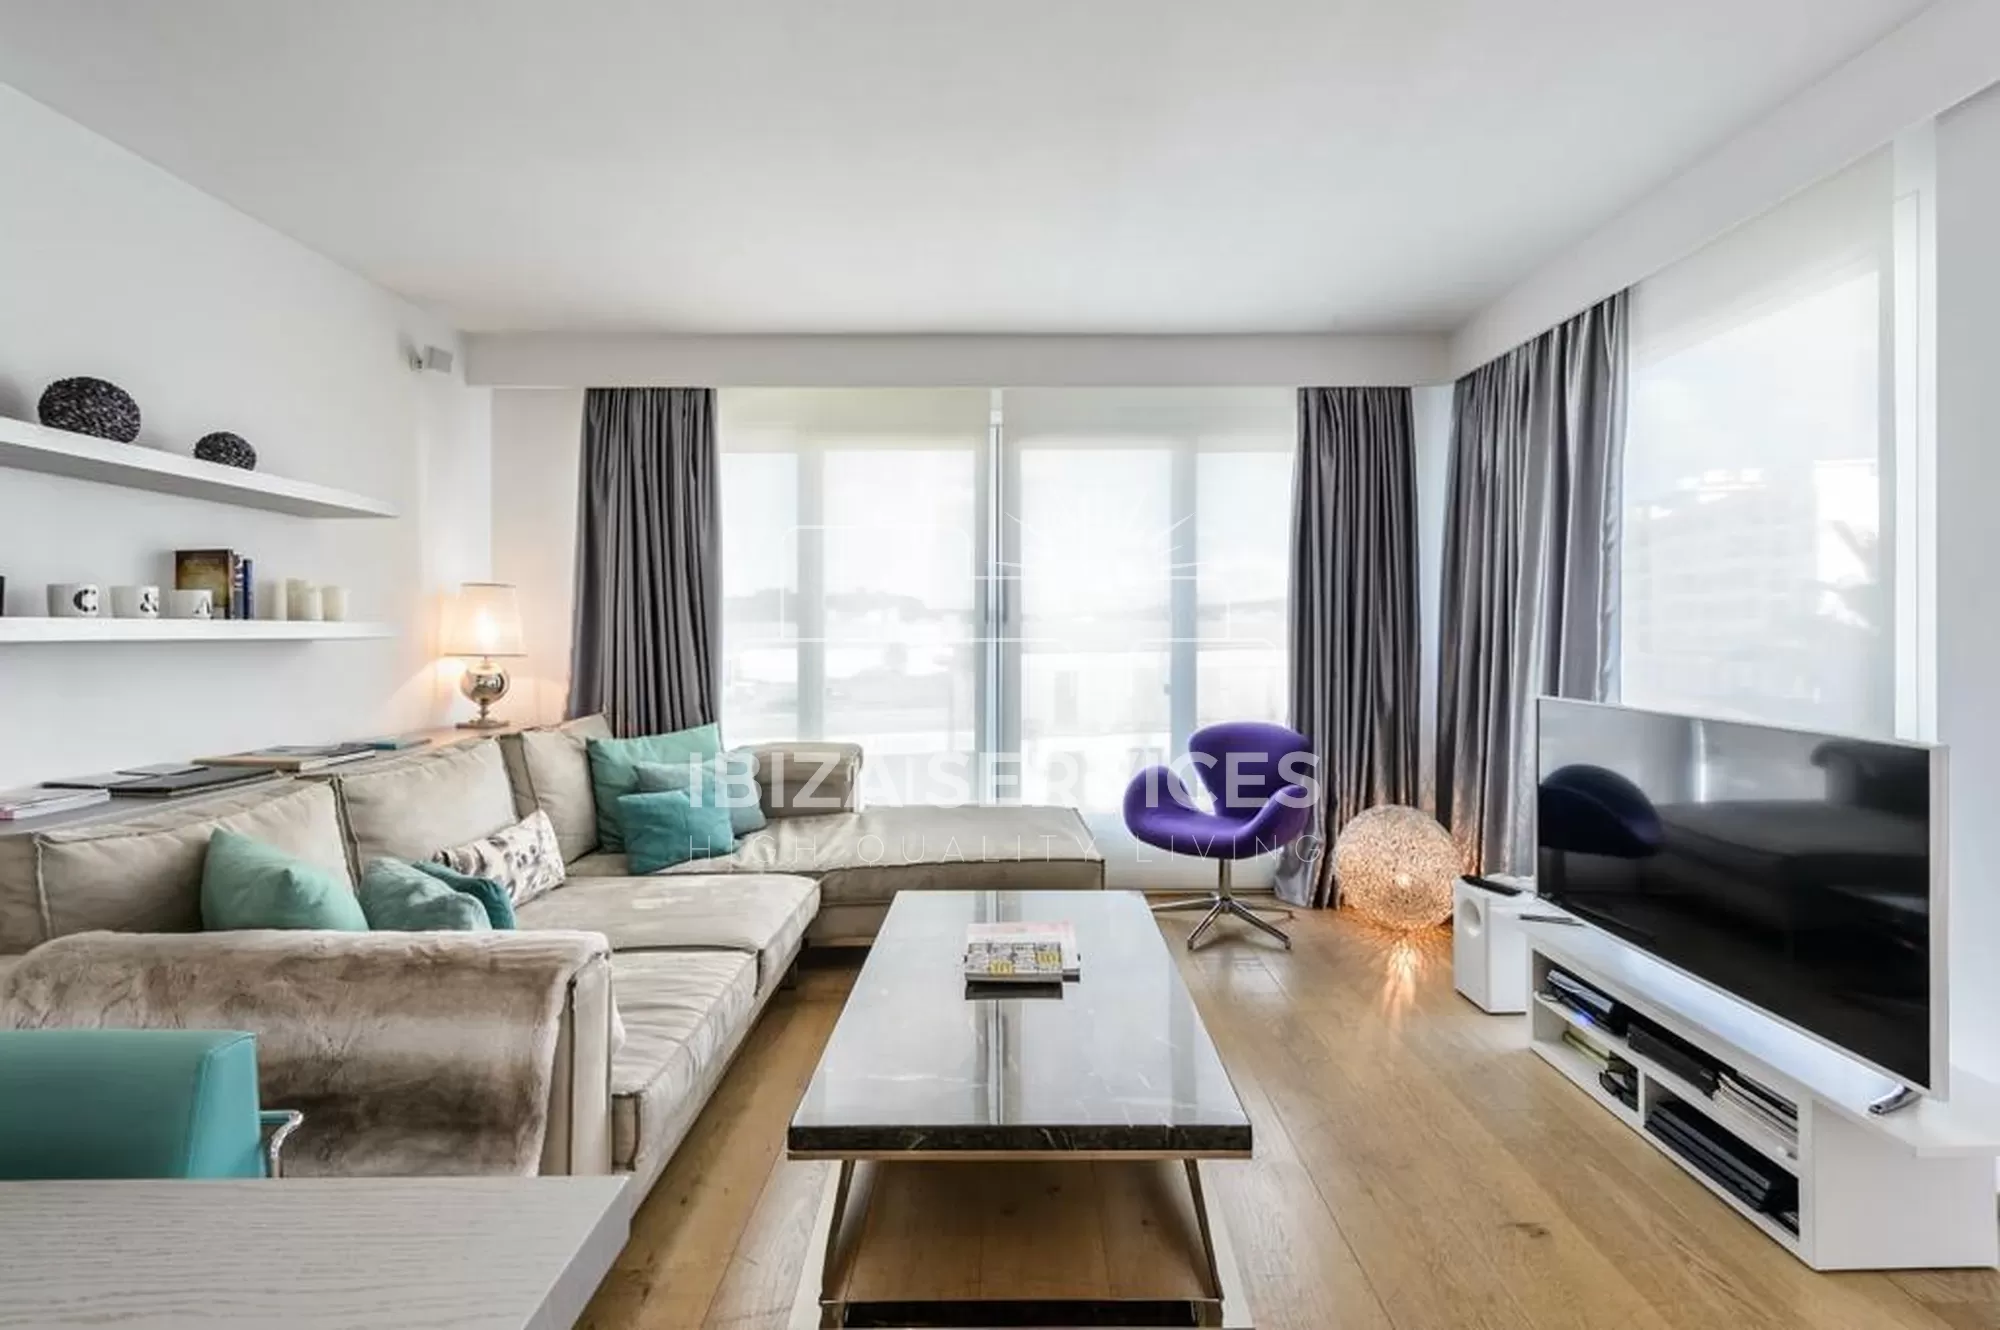 Luxe seizoensverhuur van een 2-slaapkamer appartement in Sa Marina, Ibiza.